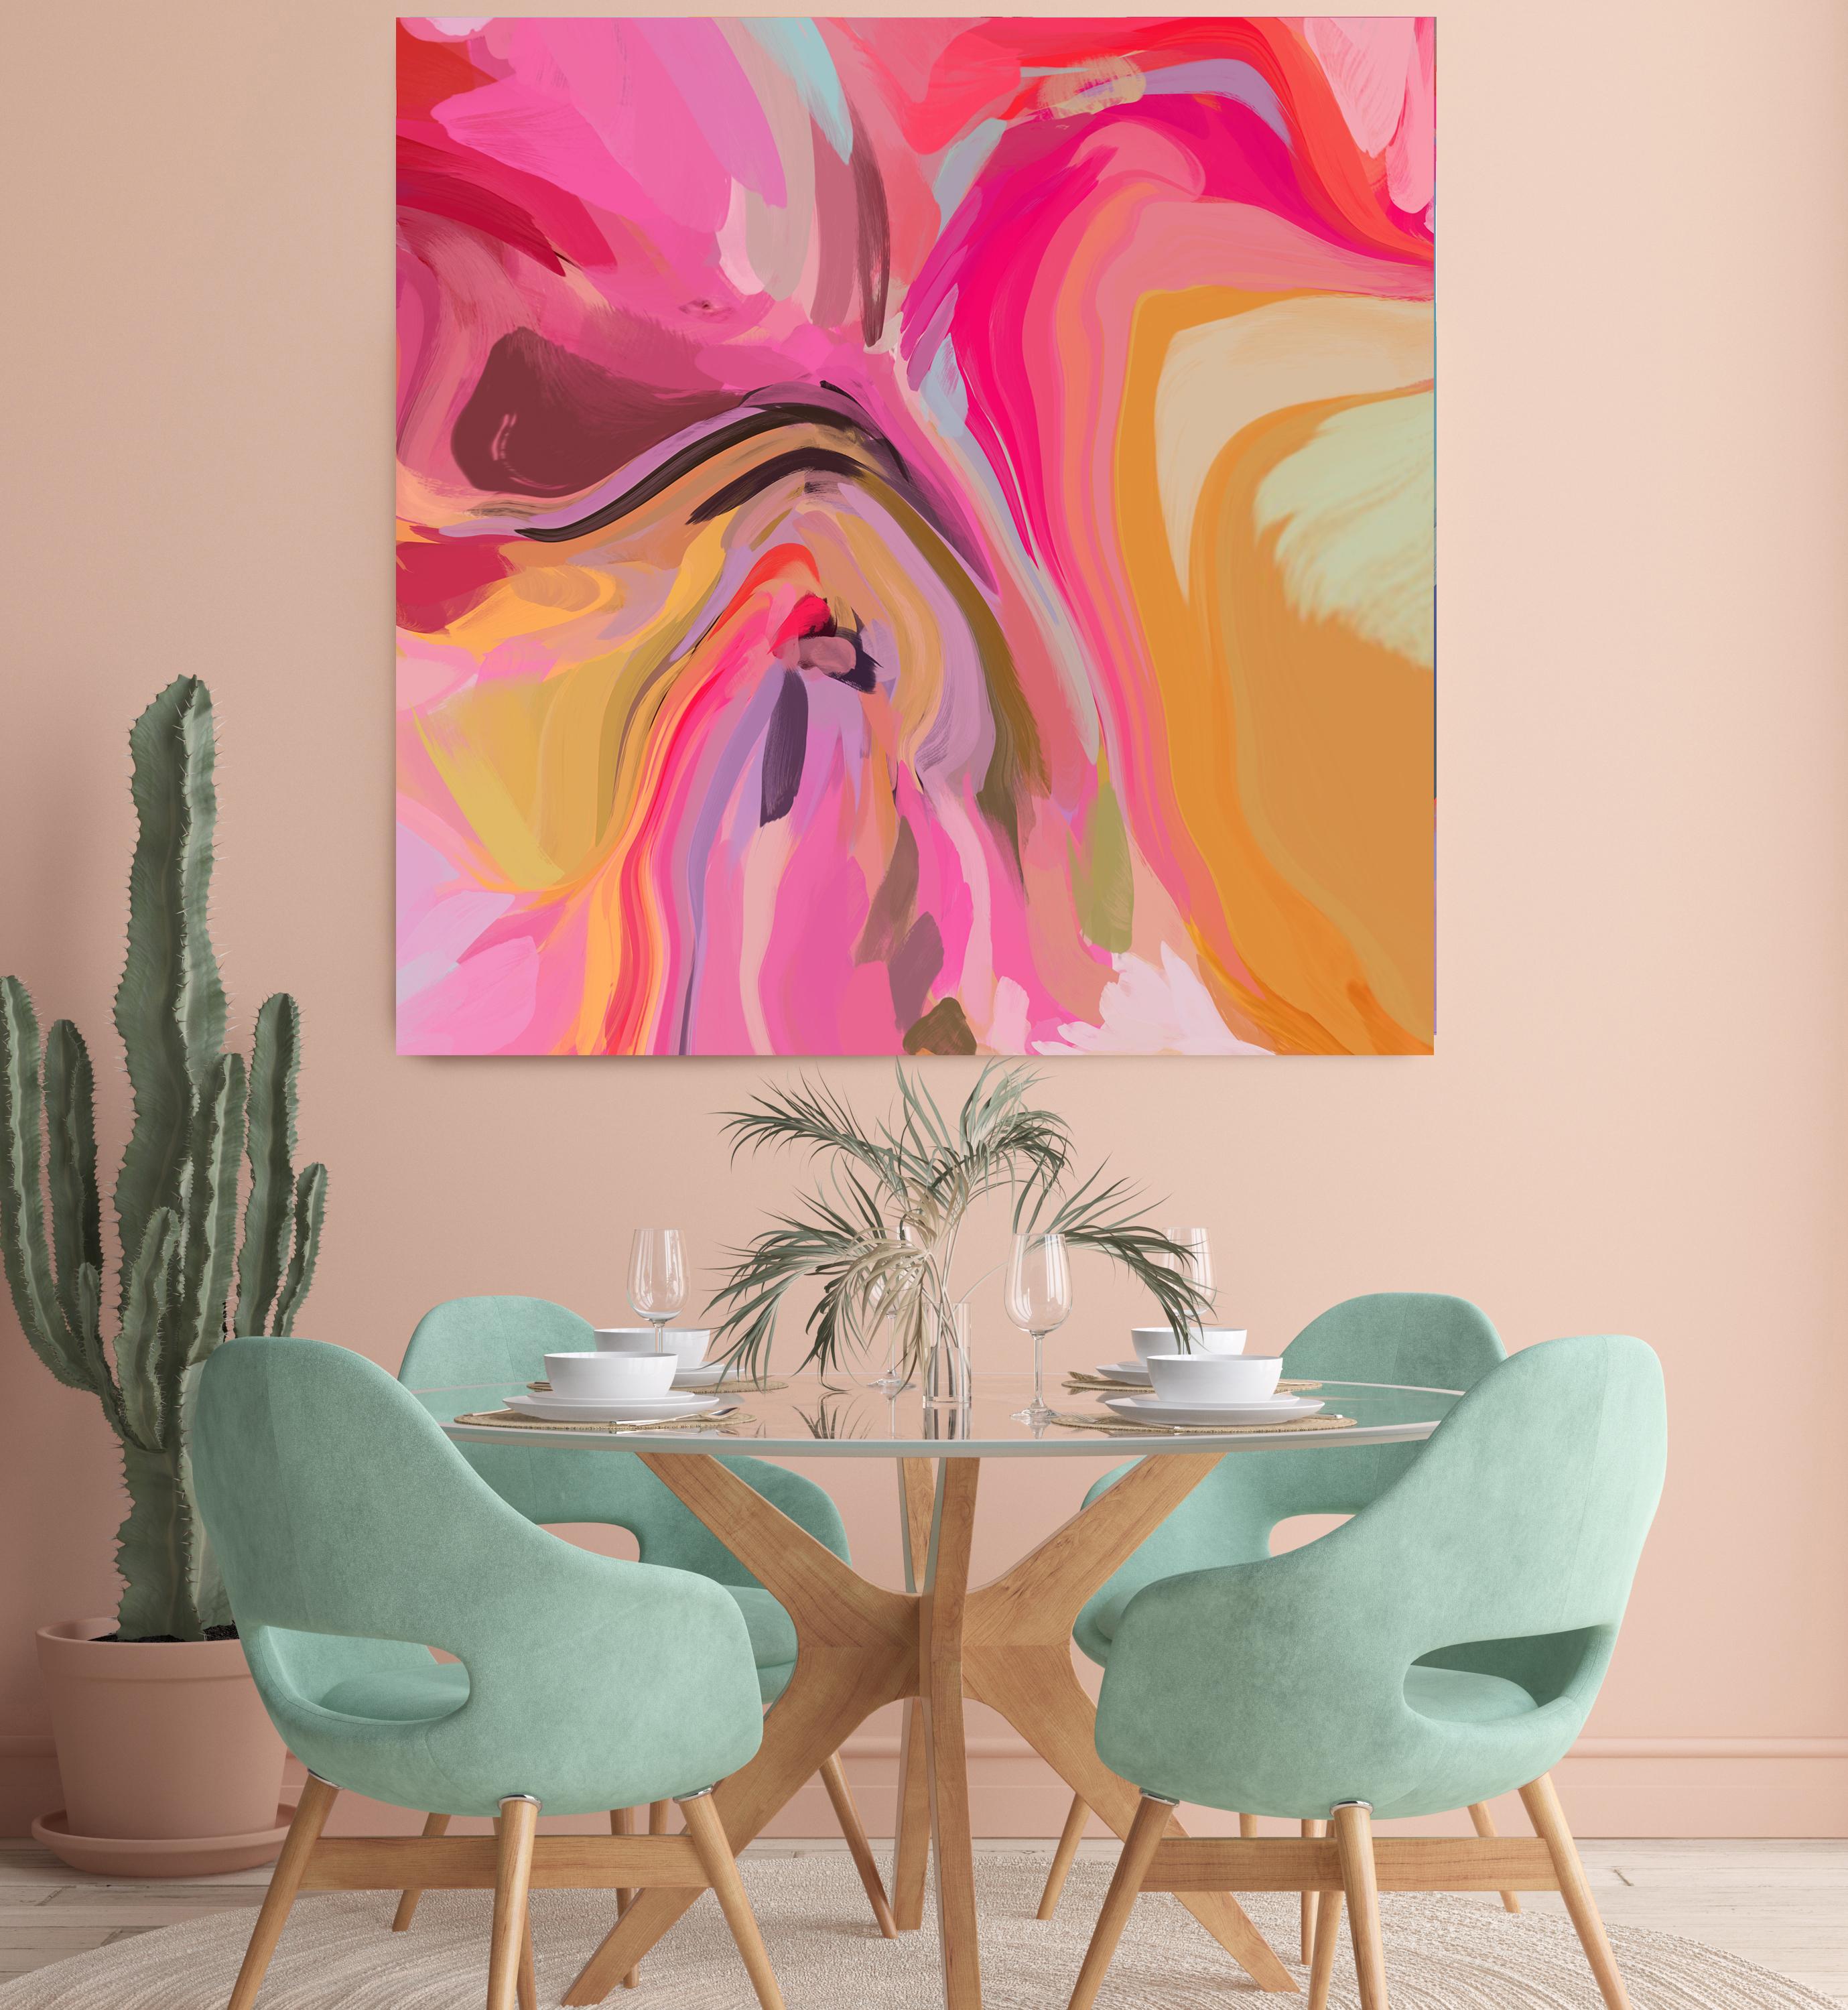 Sparks of Pink, zeitgenössische abstrakte Malerei, Mischtechnik, Leinwand 45x45" 